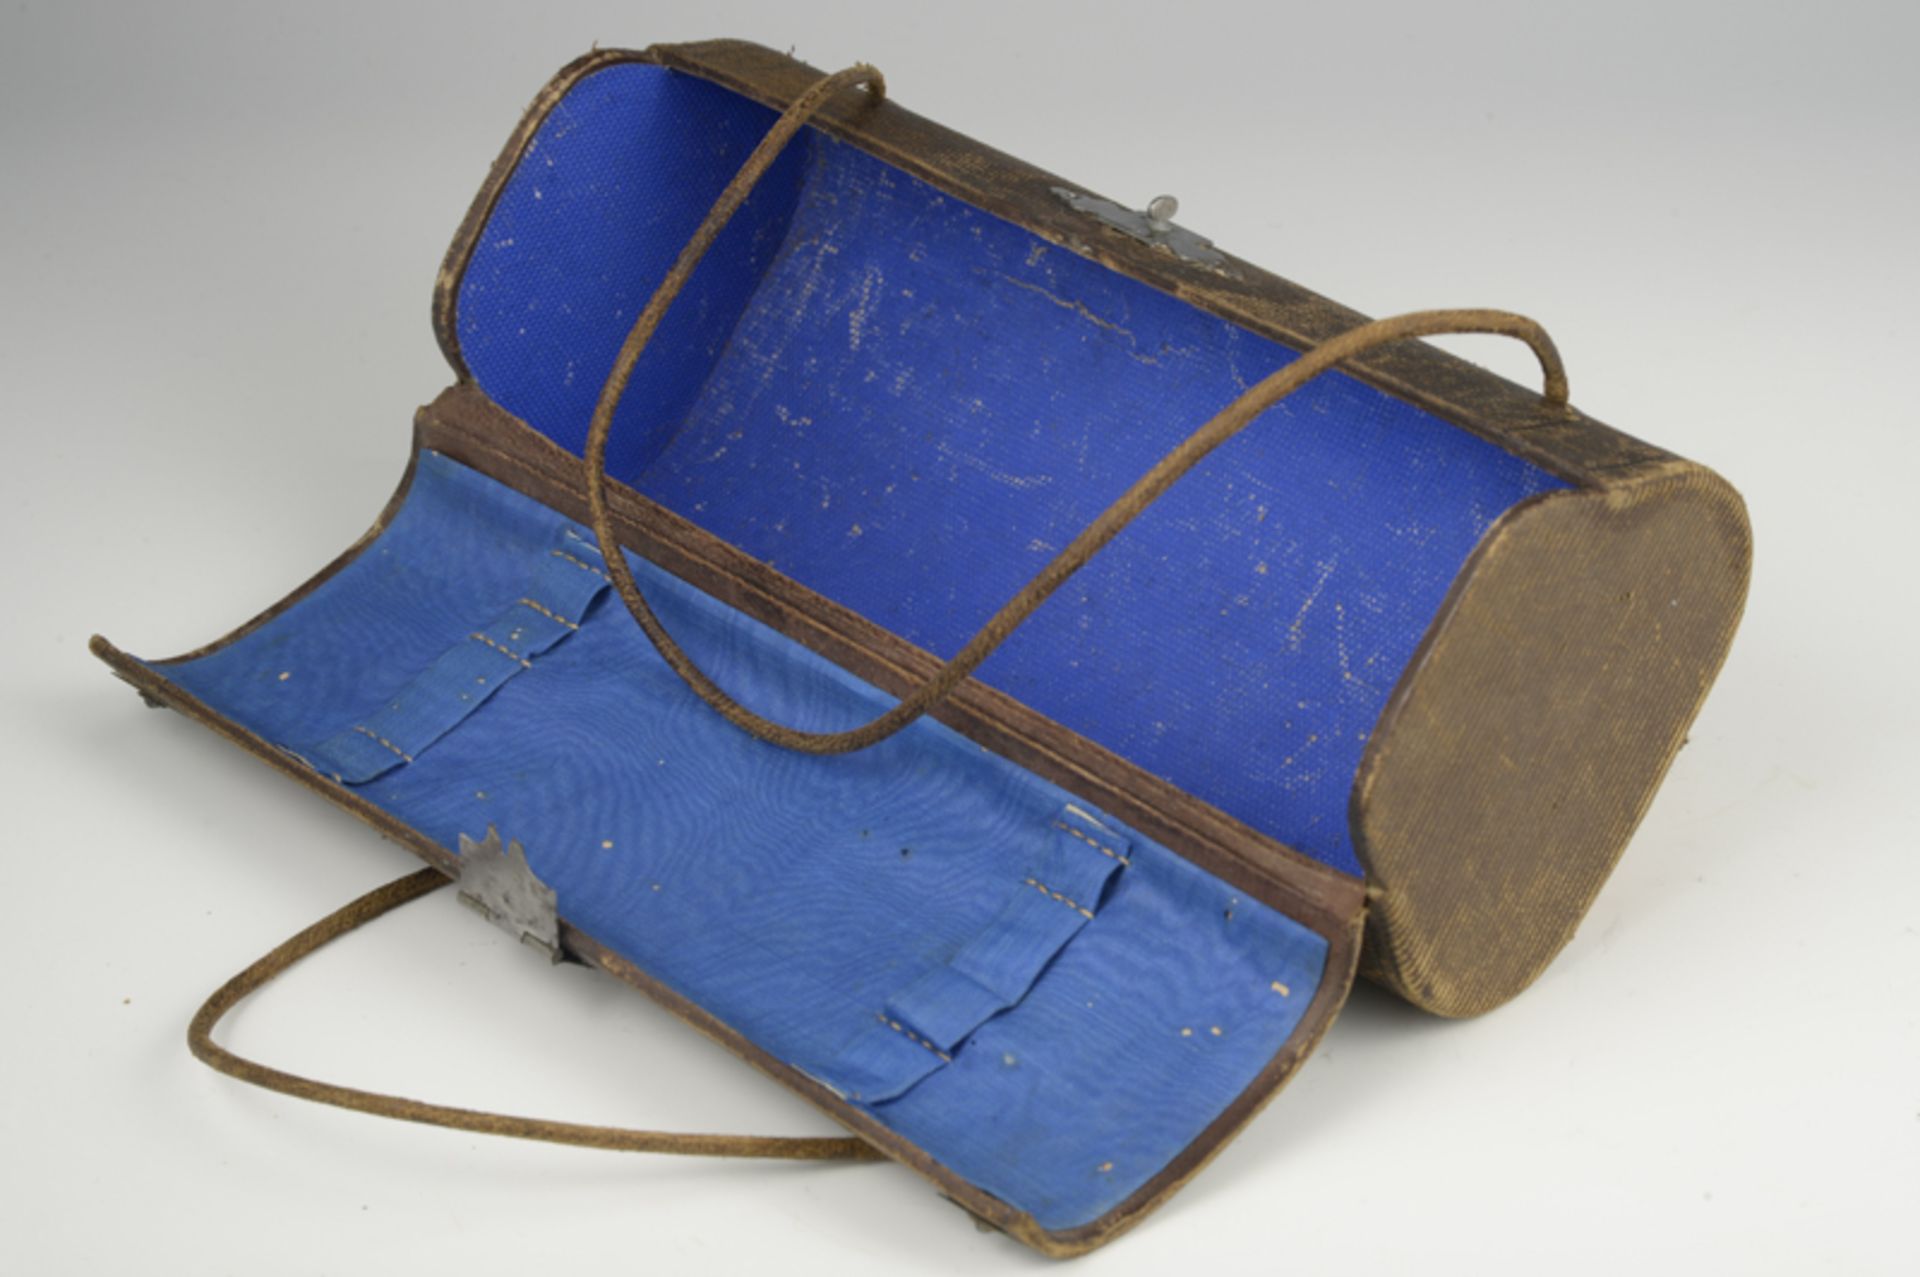 Seltene Kindertasche, (wohl Griffeltasche), aus Pappmache, um 1900Verschluß und Aplikationen - - Bild 2 aus 2